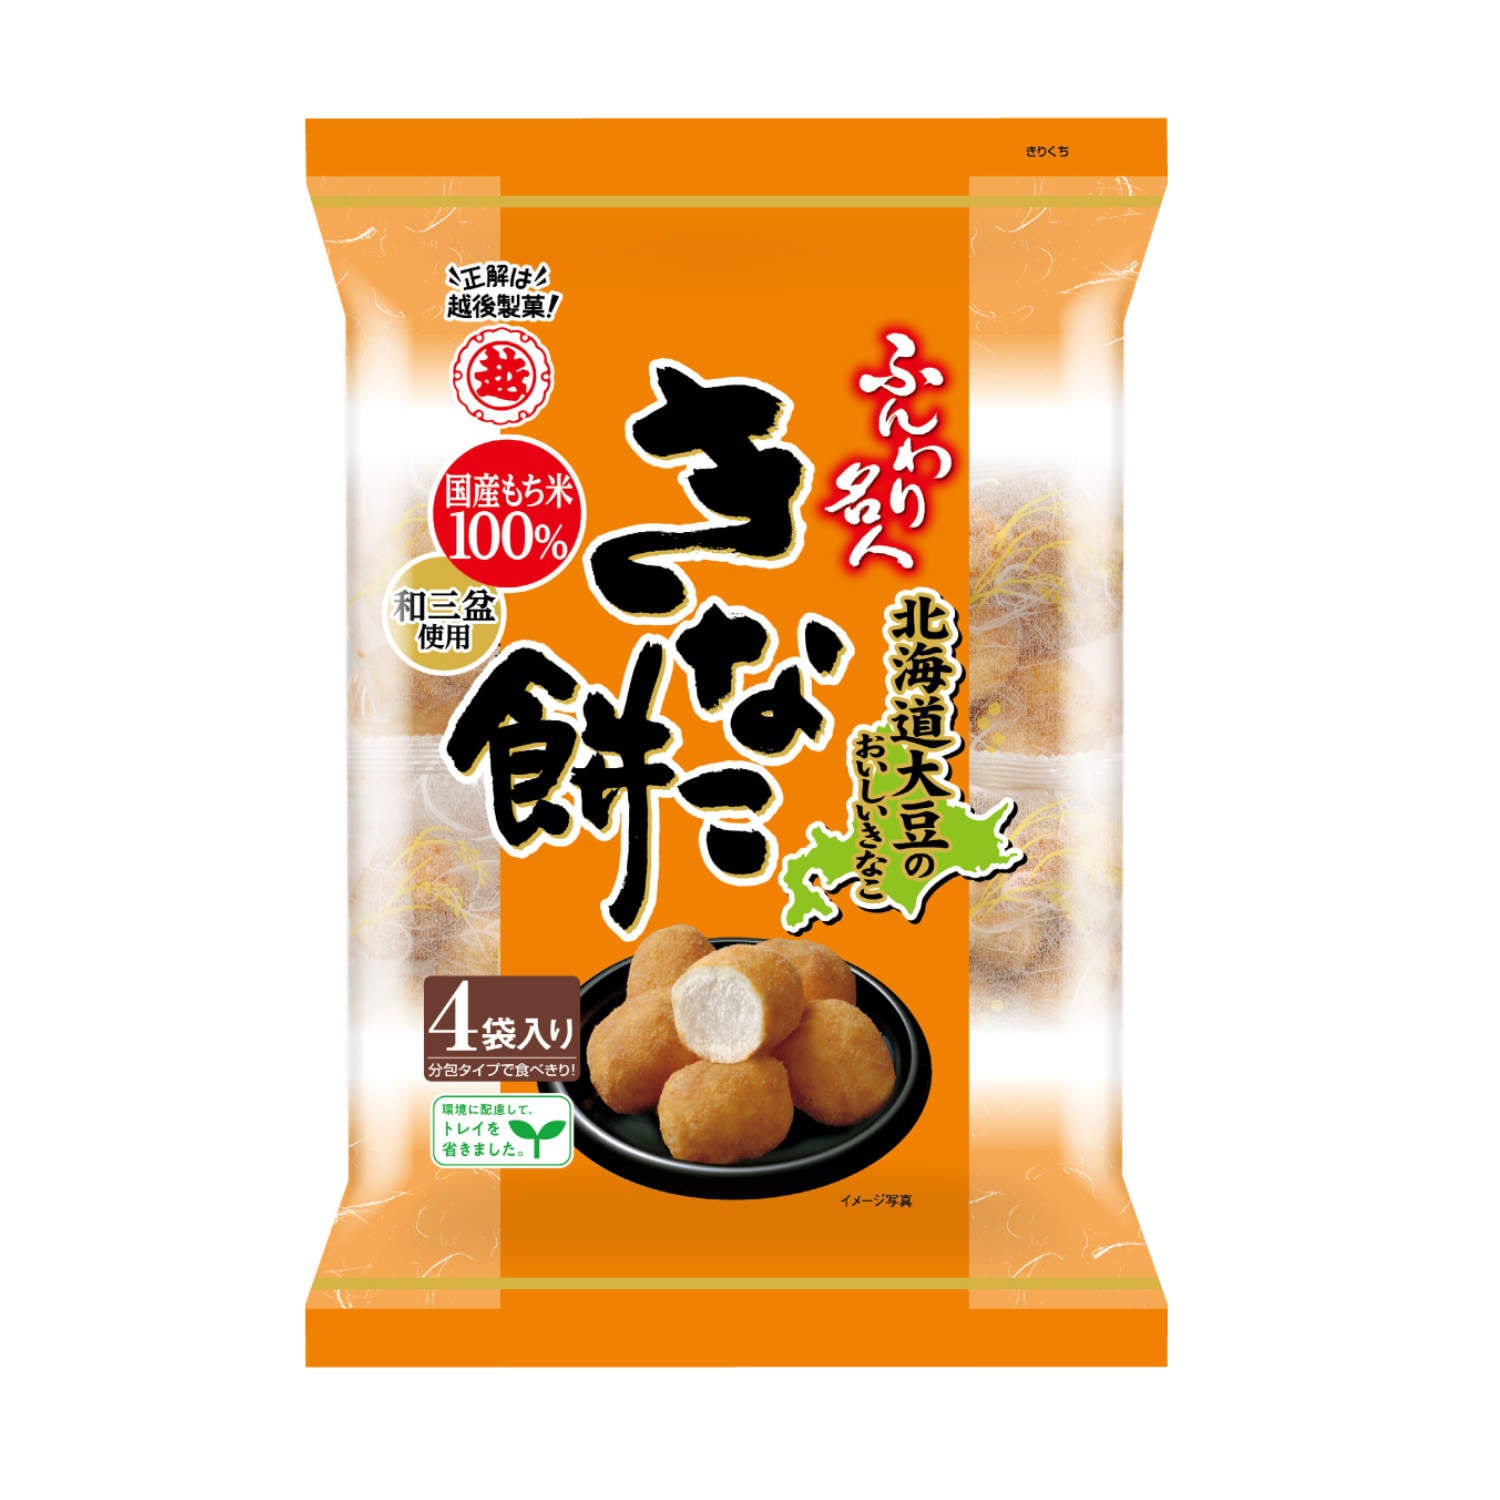 Kinako Rice Puff Snack 75g